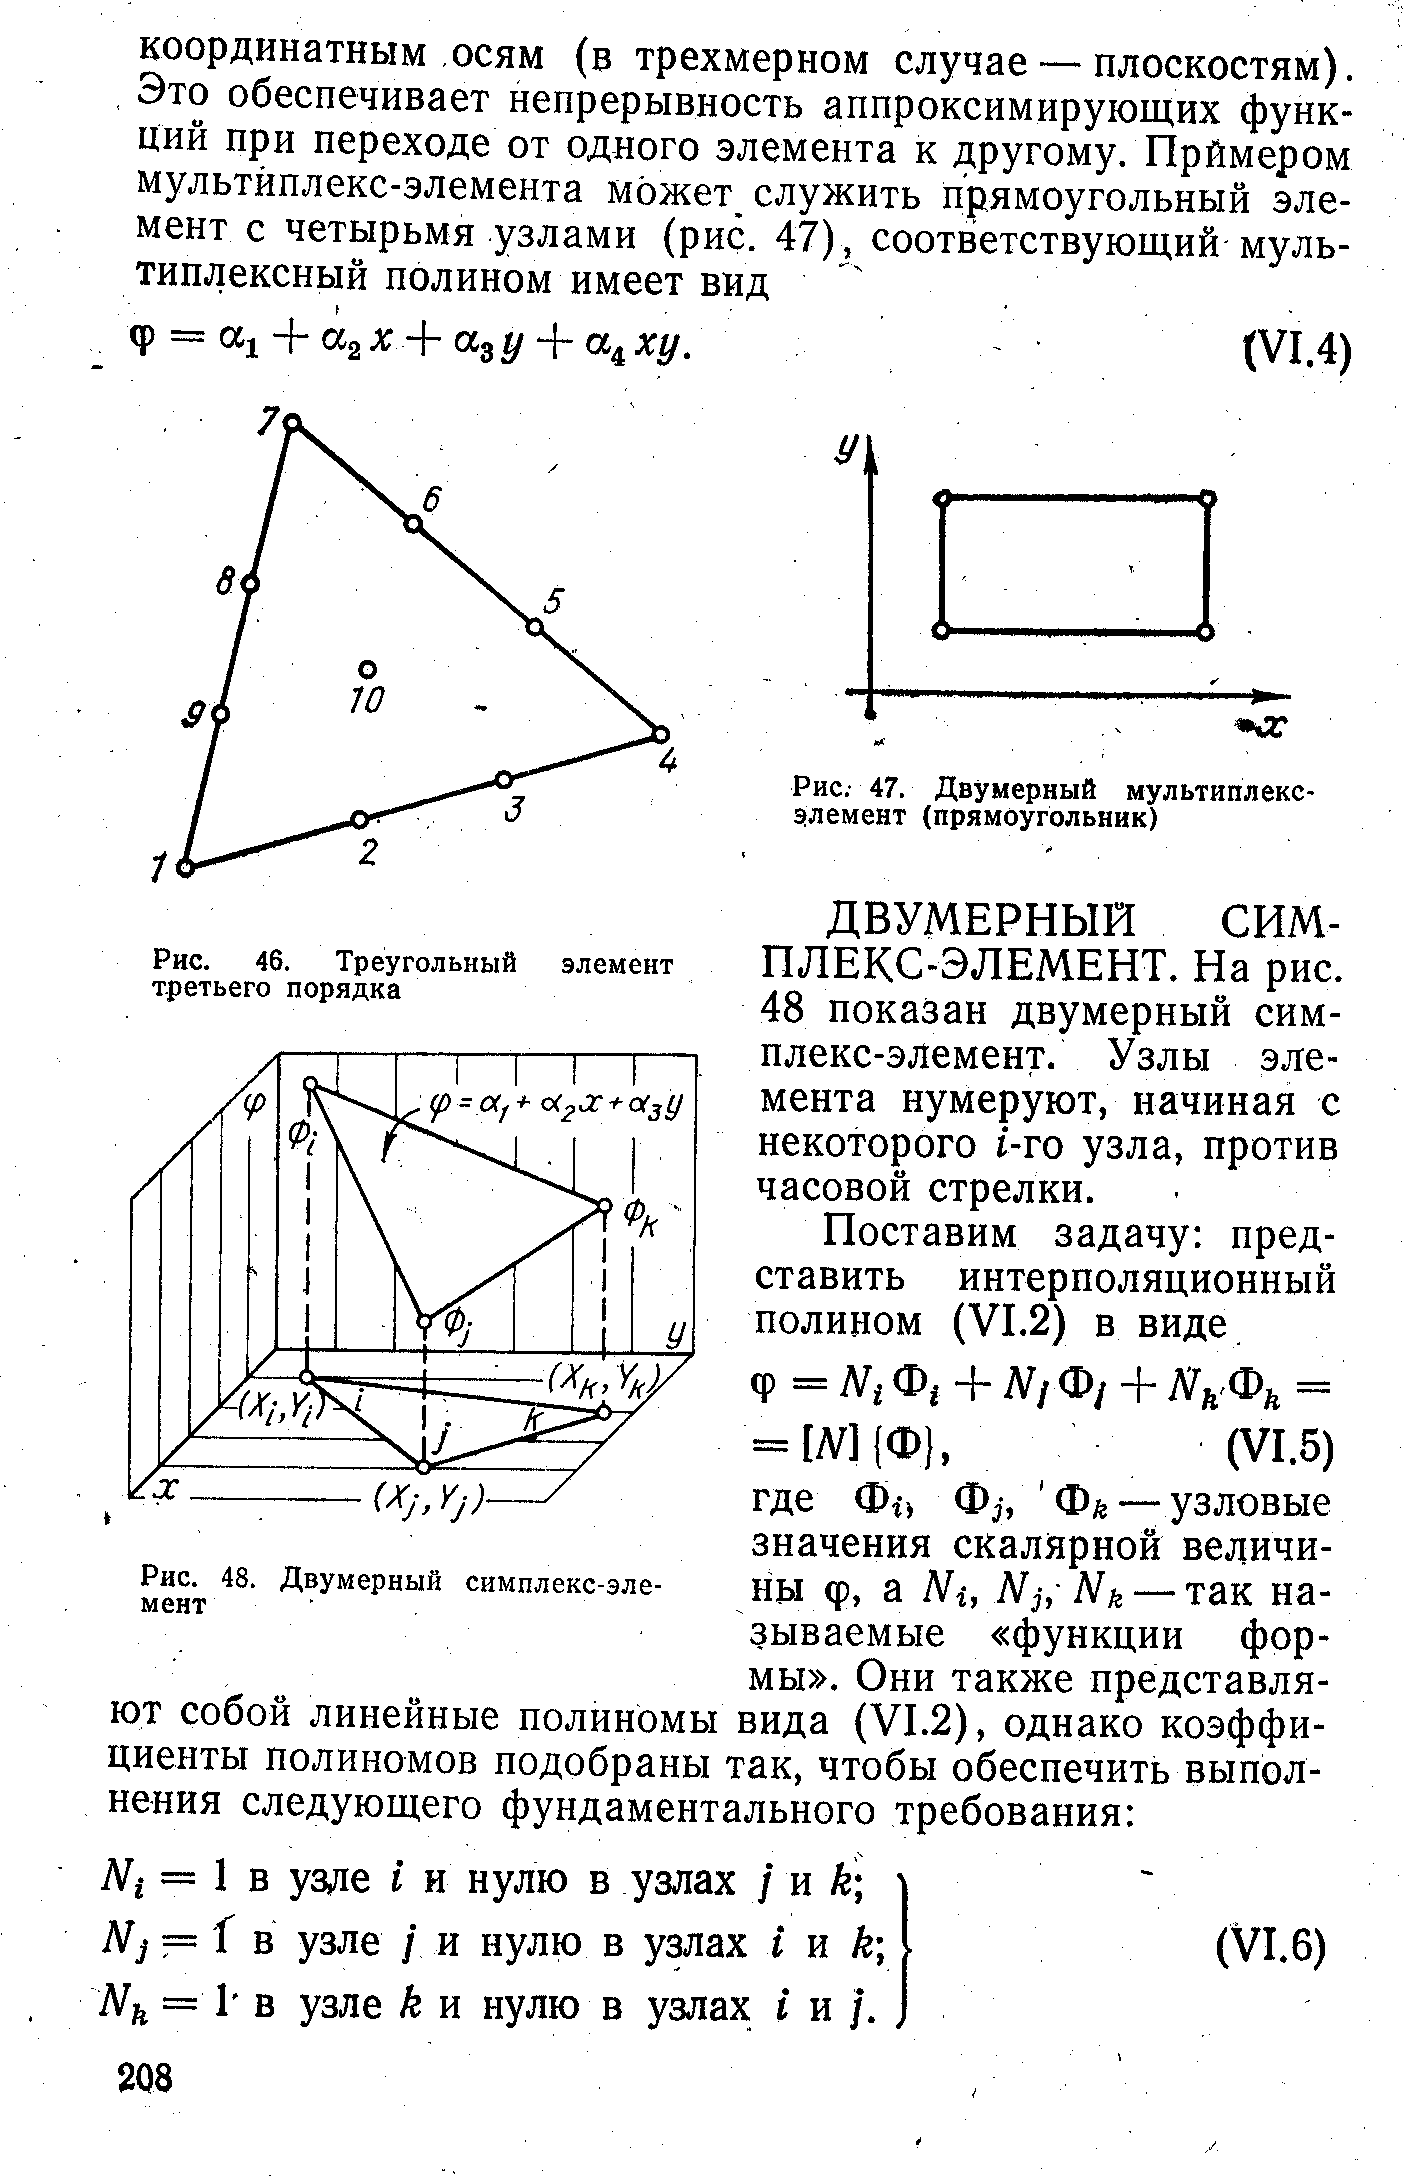 Рис. 47. Двумерный мультиплекс-элемент (прямоугольник)
